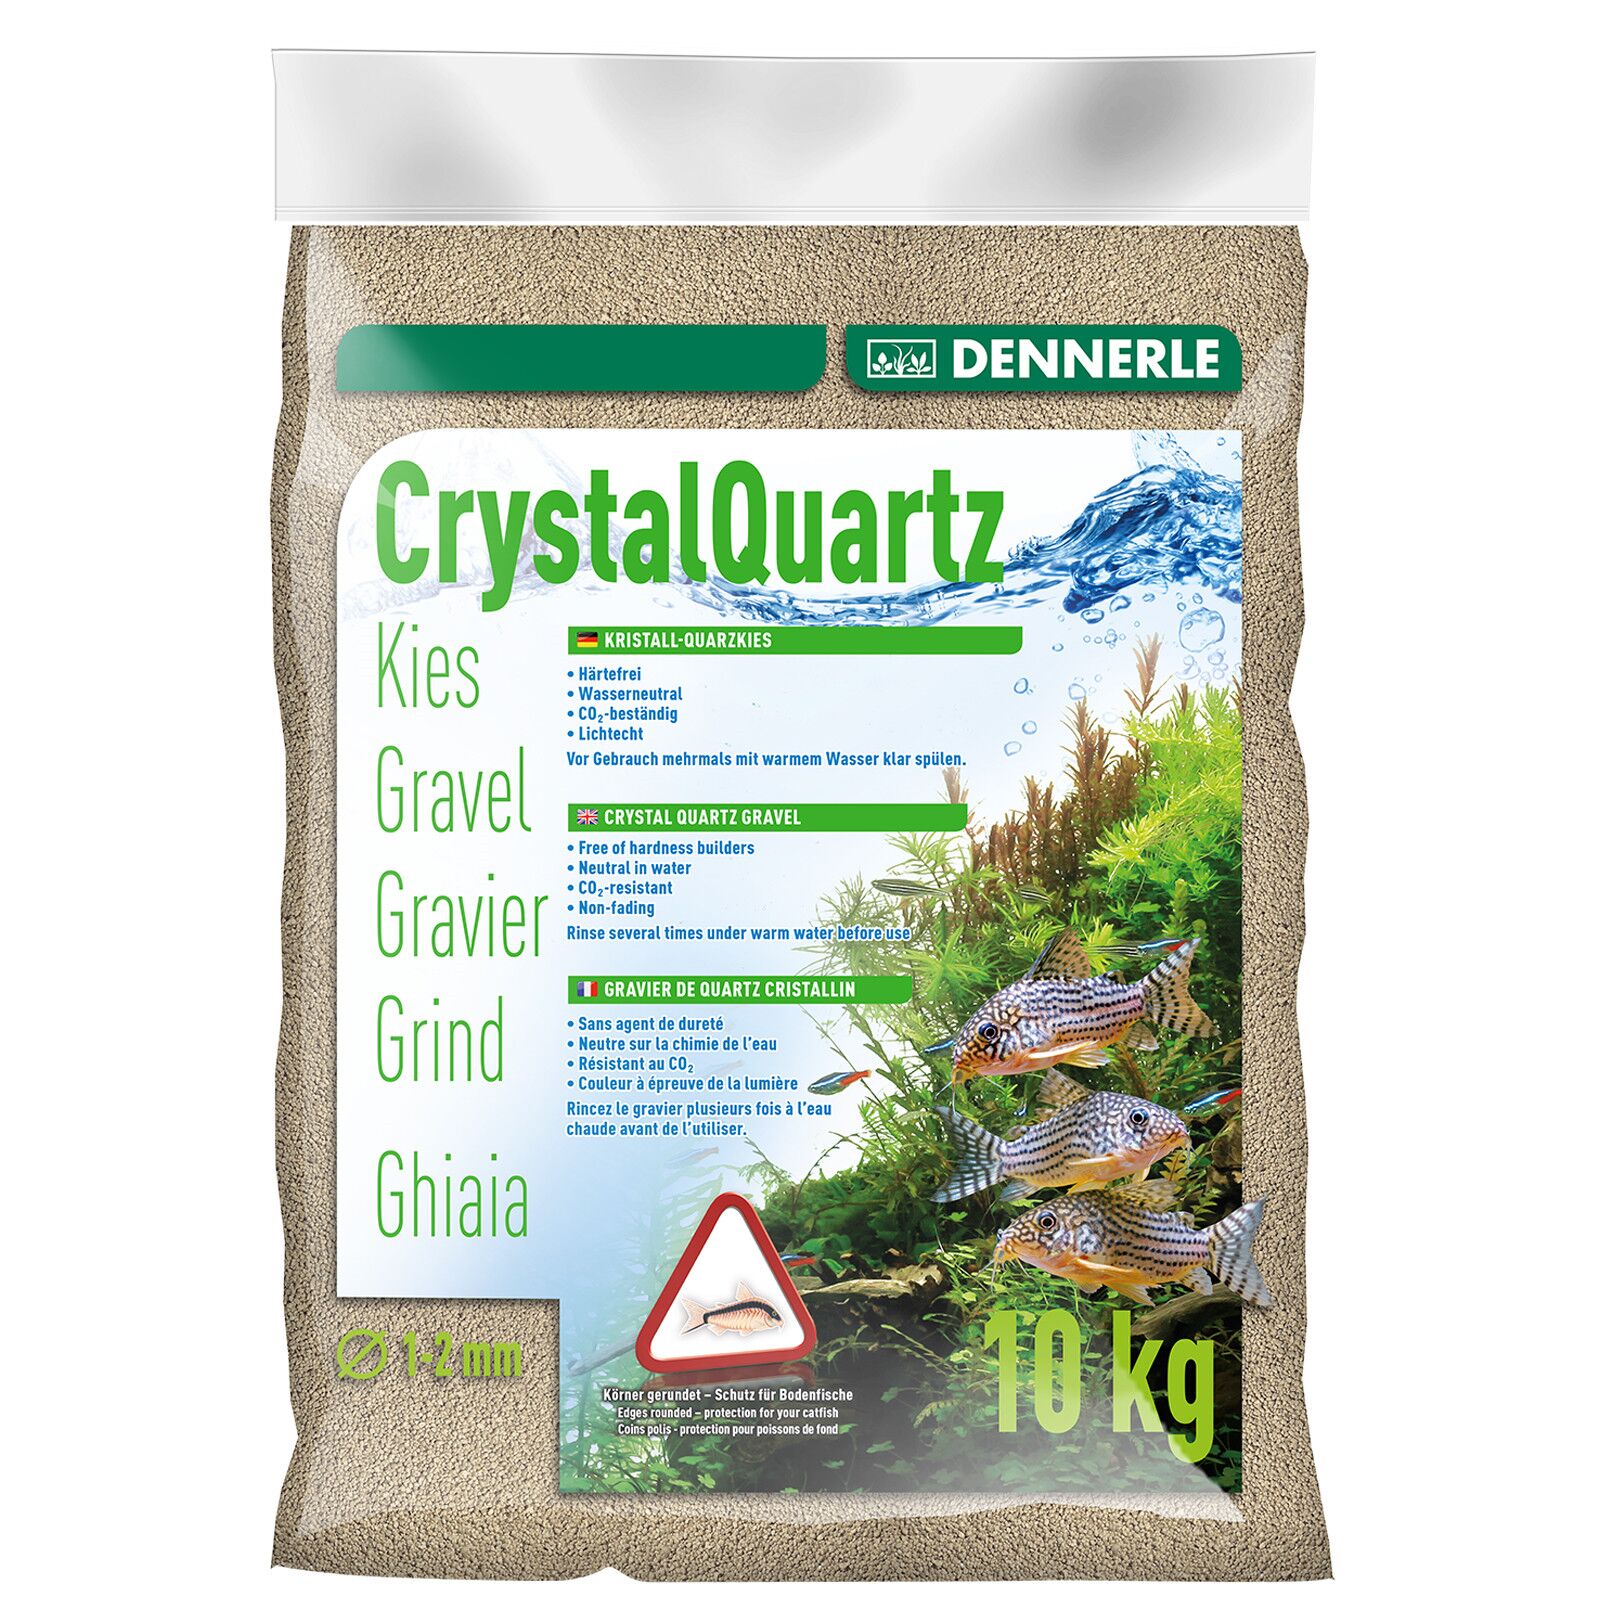 Dennerle - Crystal Quartz Gravel - natural white